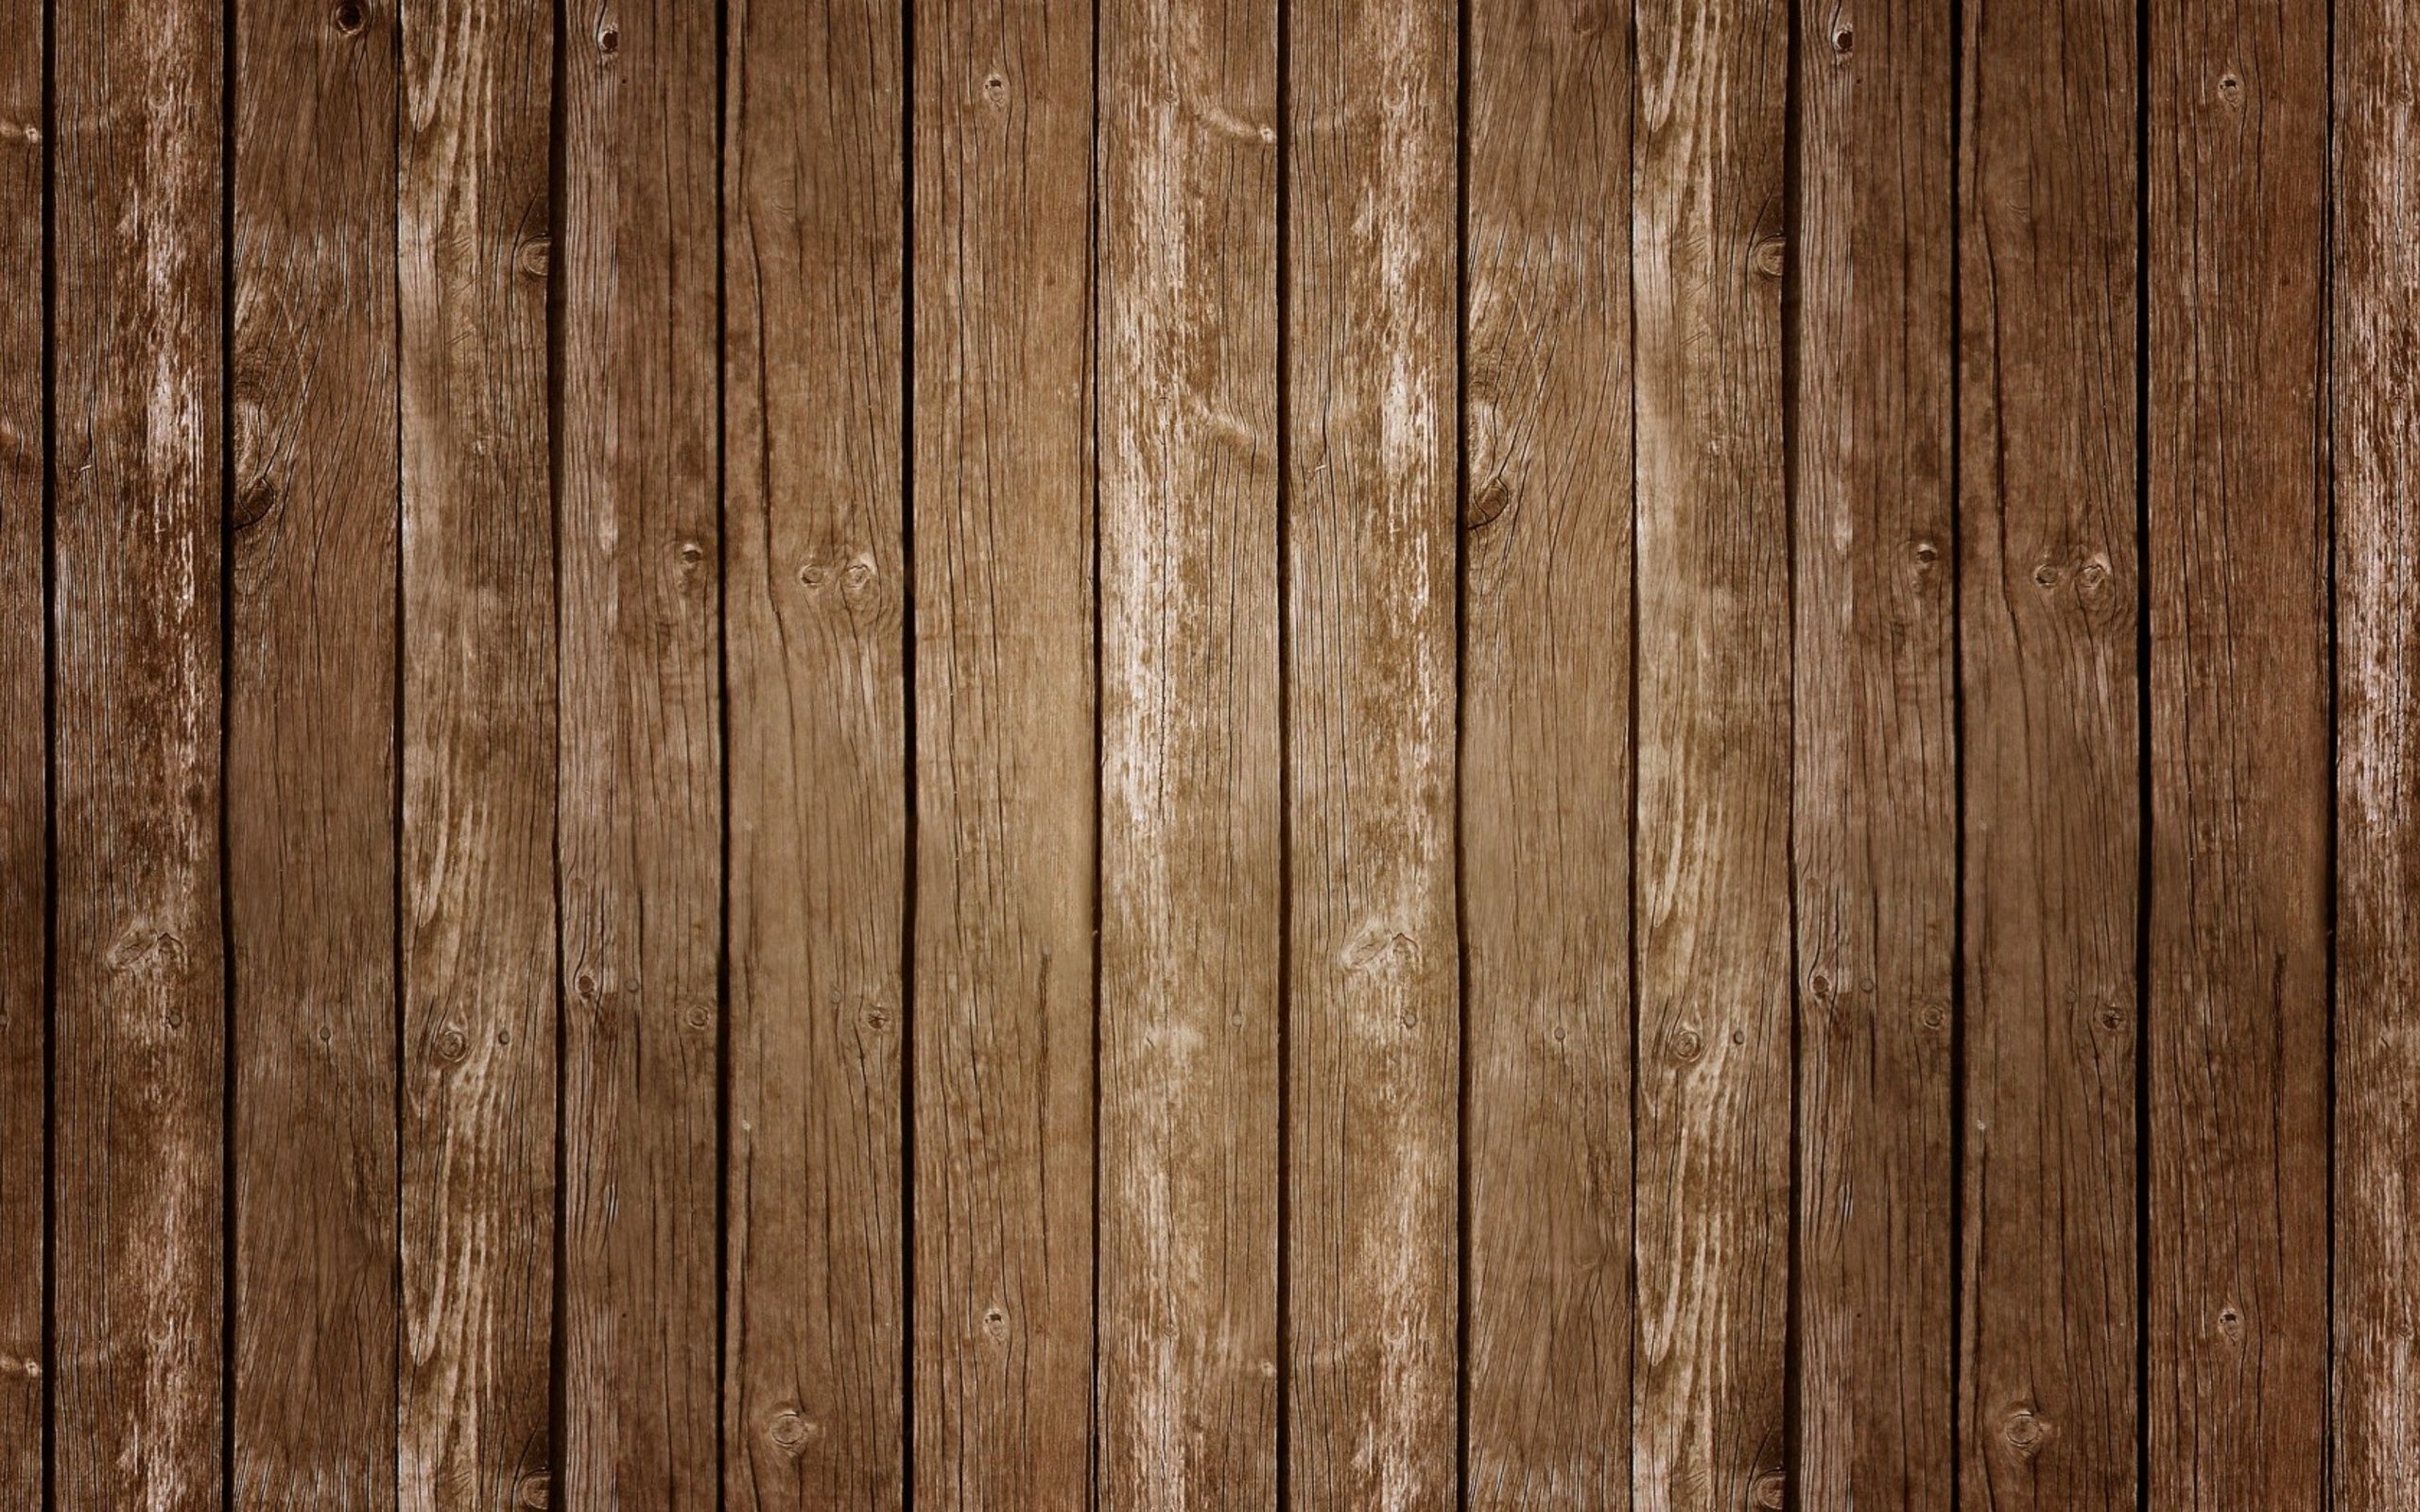 Hình nền gỗ sẽ mang đến cho bạn một không gian làm việc hoàn hảo với sự ấm cúng và gần gũi của vật liệu tự nhiên. Hãy thưởng thức hình ảnh và cảm nhận sự tinh tế của hình nền gỗ này.